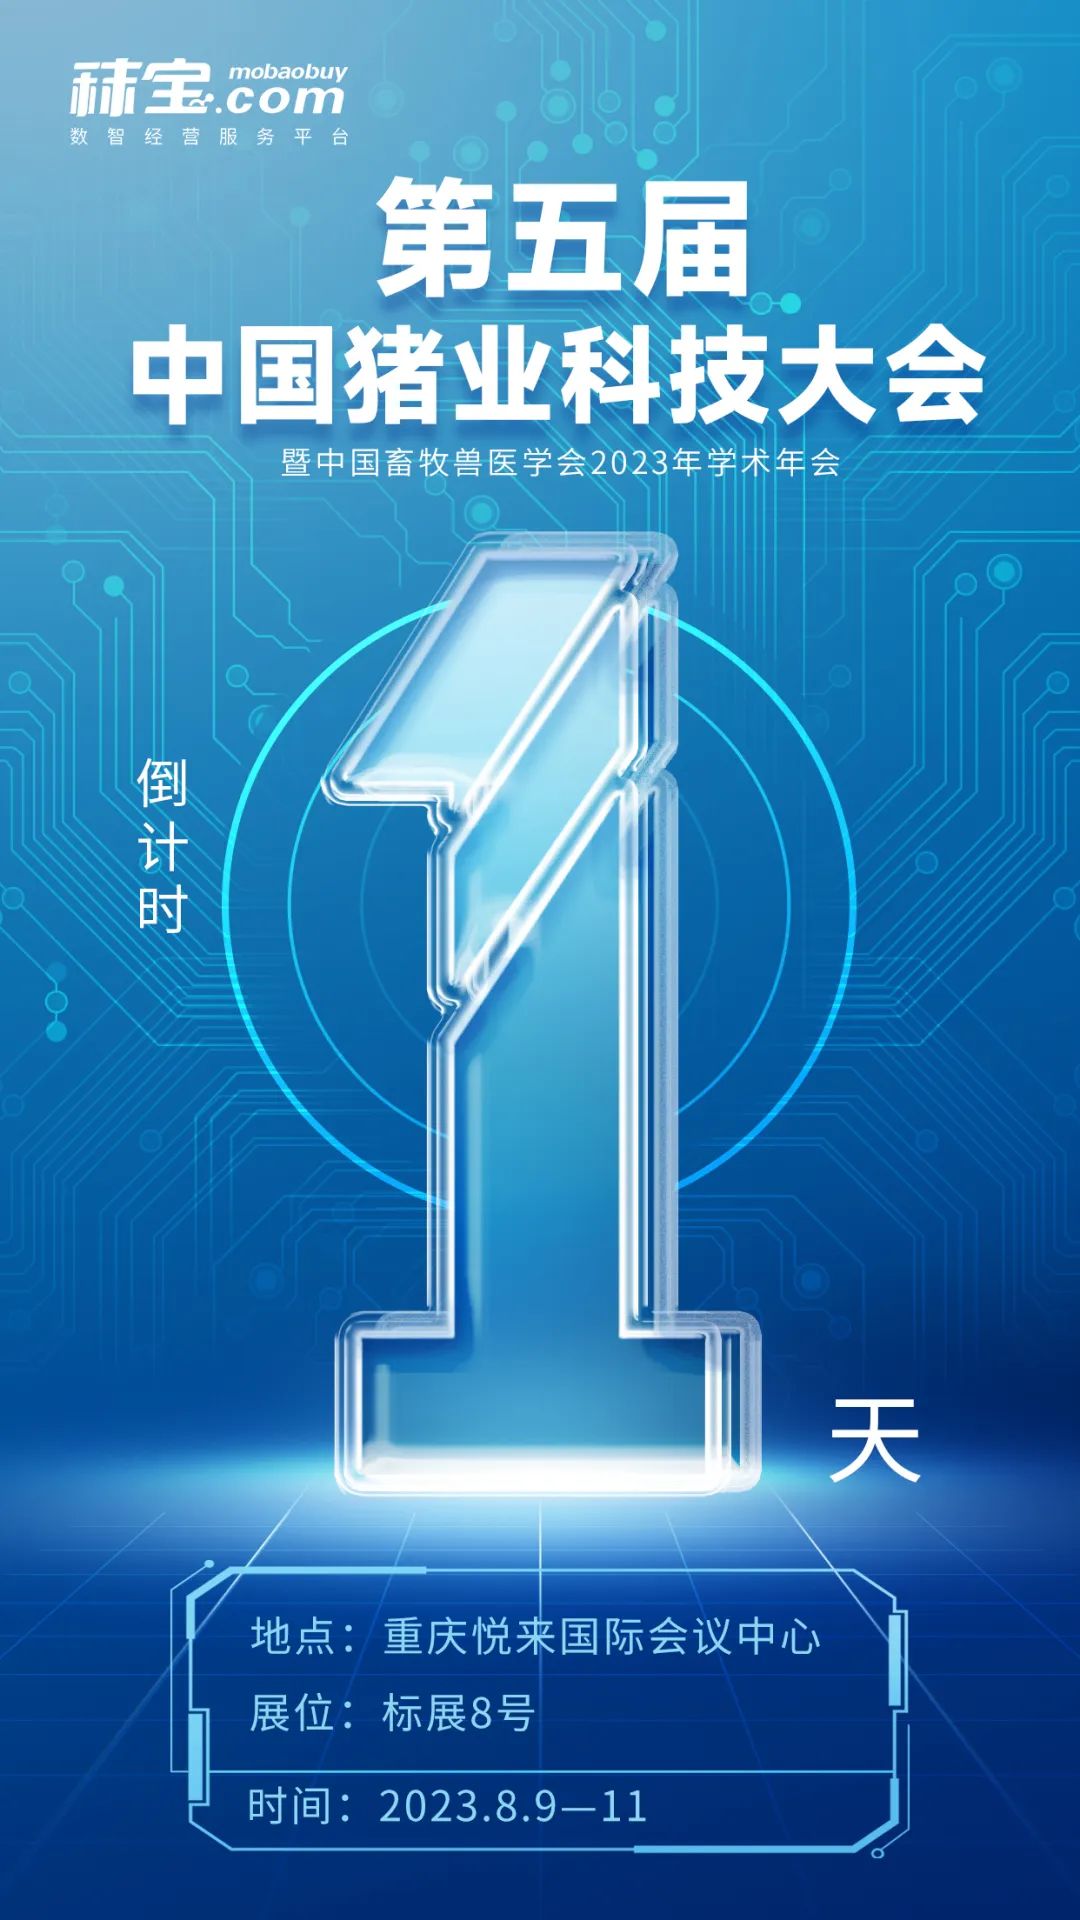 倒计时1天！第五届中国猪业科技大会即将开幕